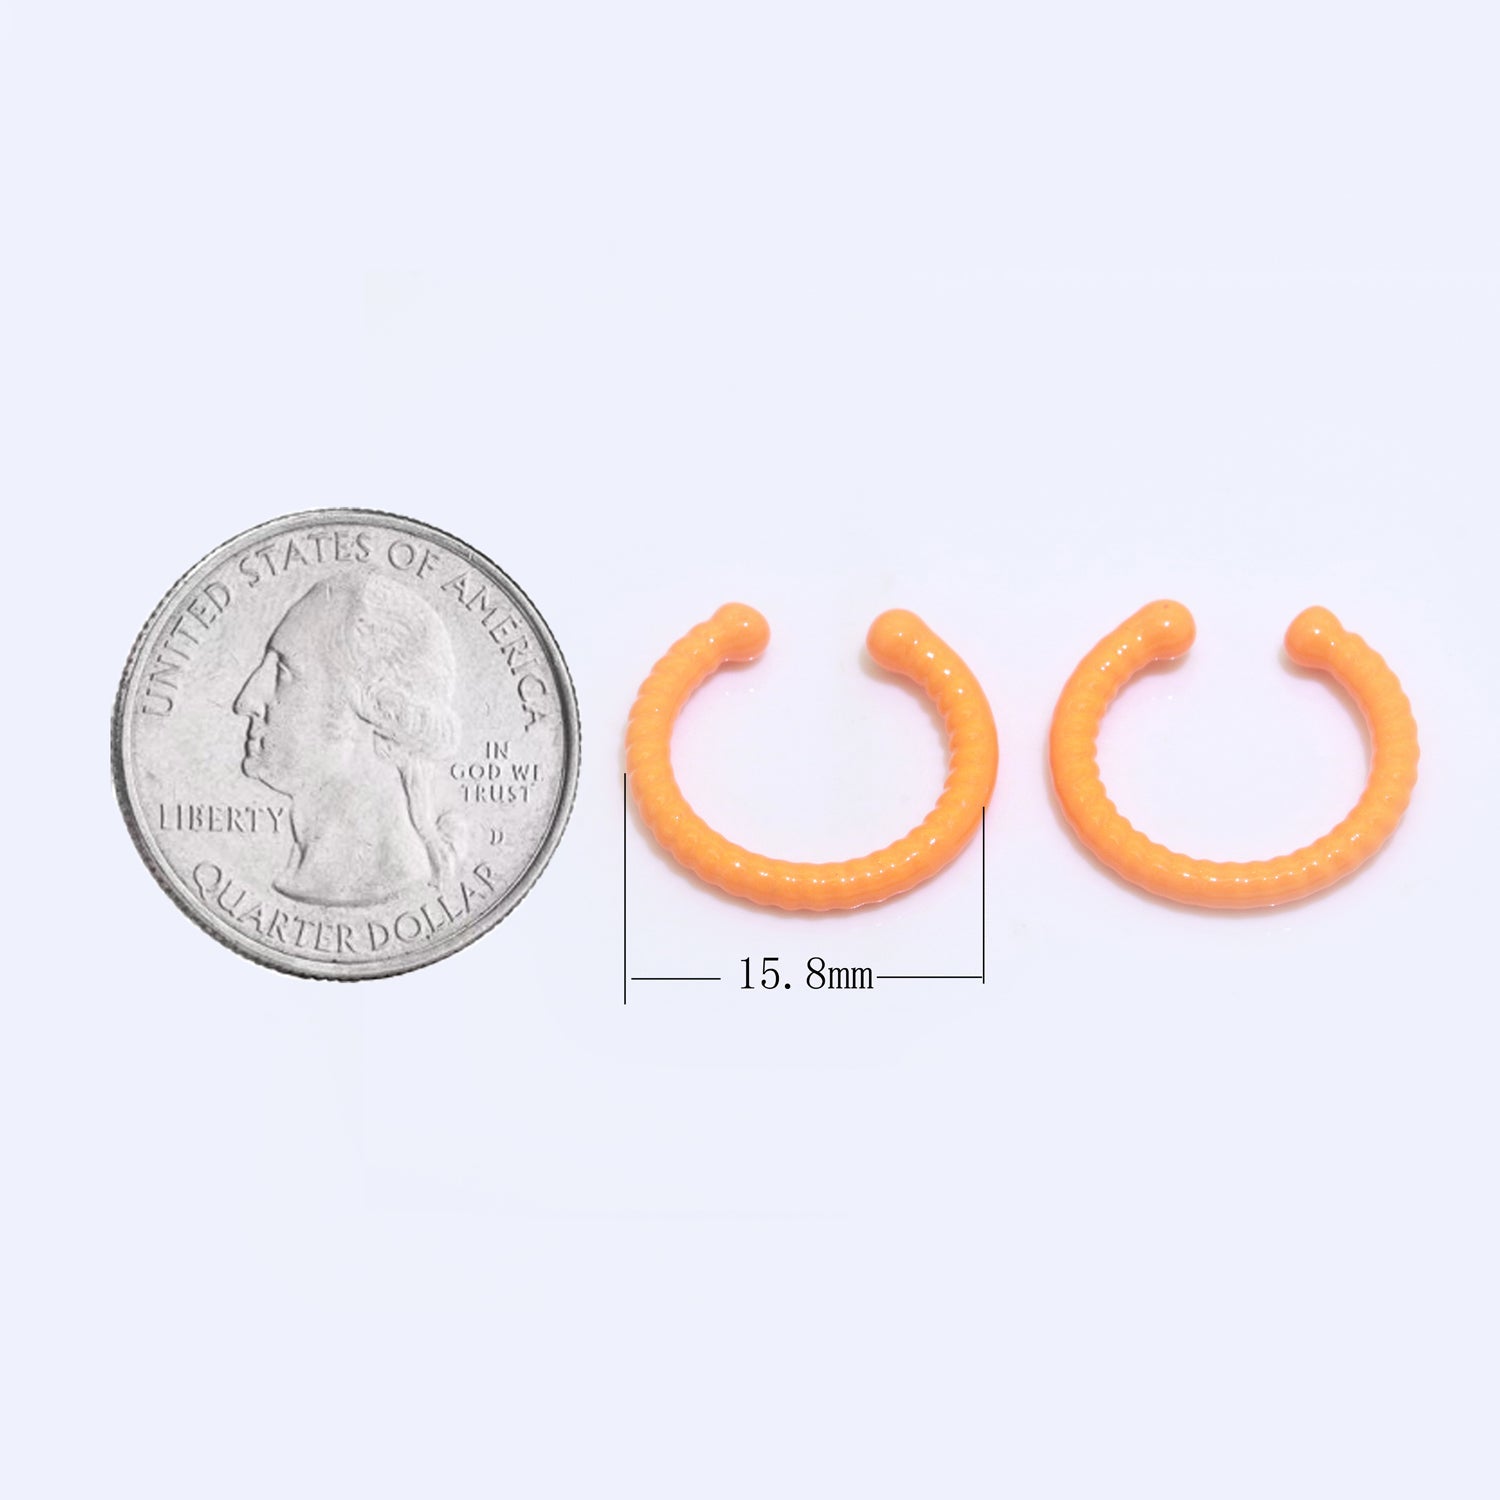 1 pair Neon Color Ear Cuff Earring Nonpierced Ear cuff for Cartilage, Dainty Earring Y2K Jewelry - DLUXCA